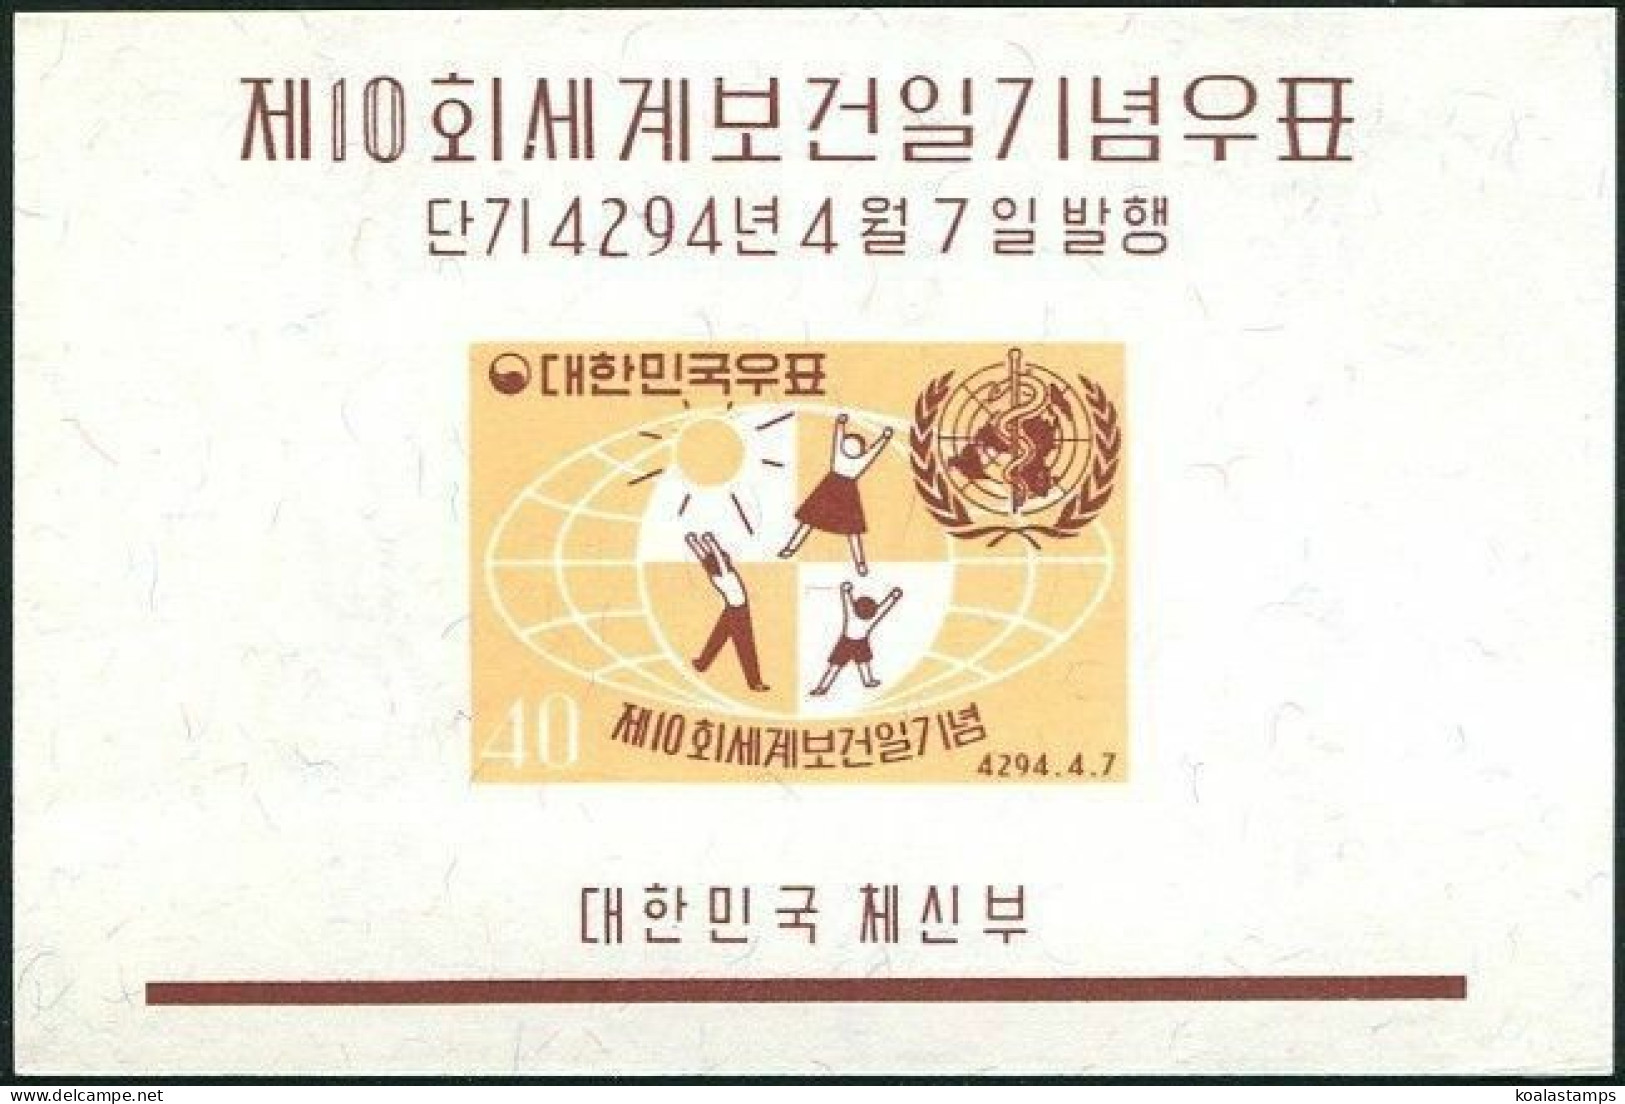 Korea South 1961 SG391 World Health Day MS MNH - Corée Du Sud